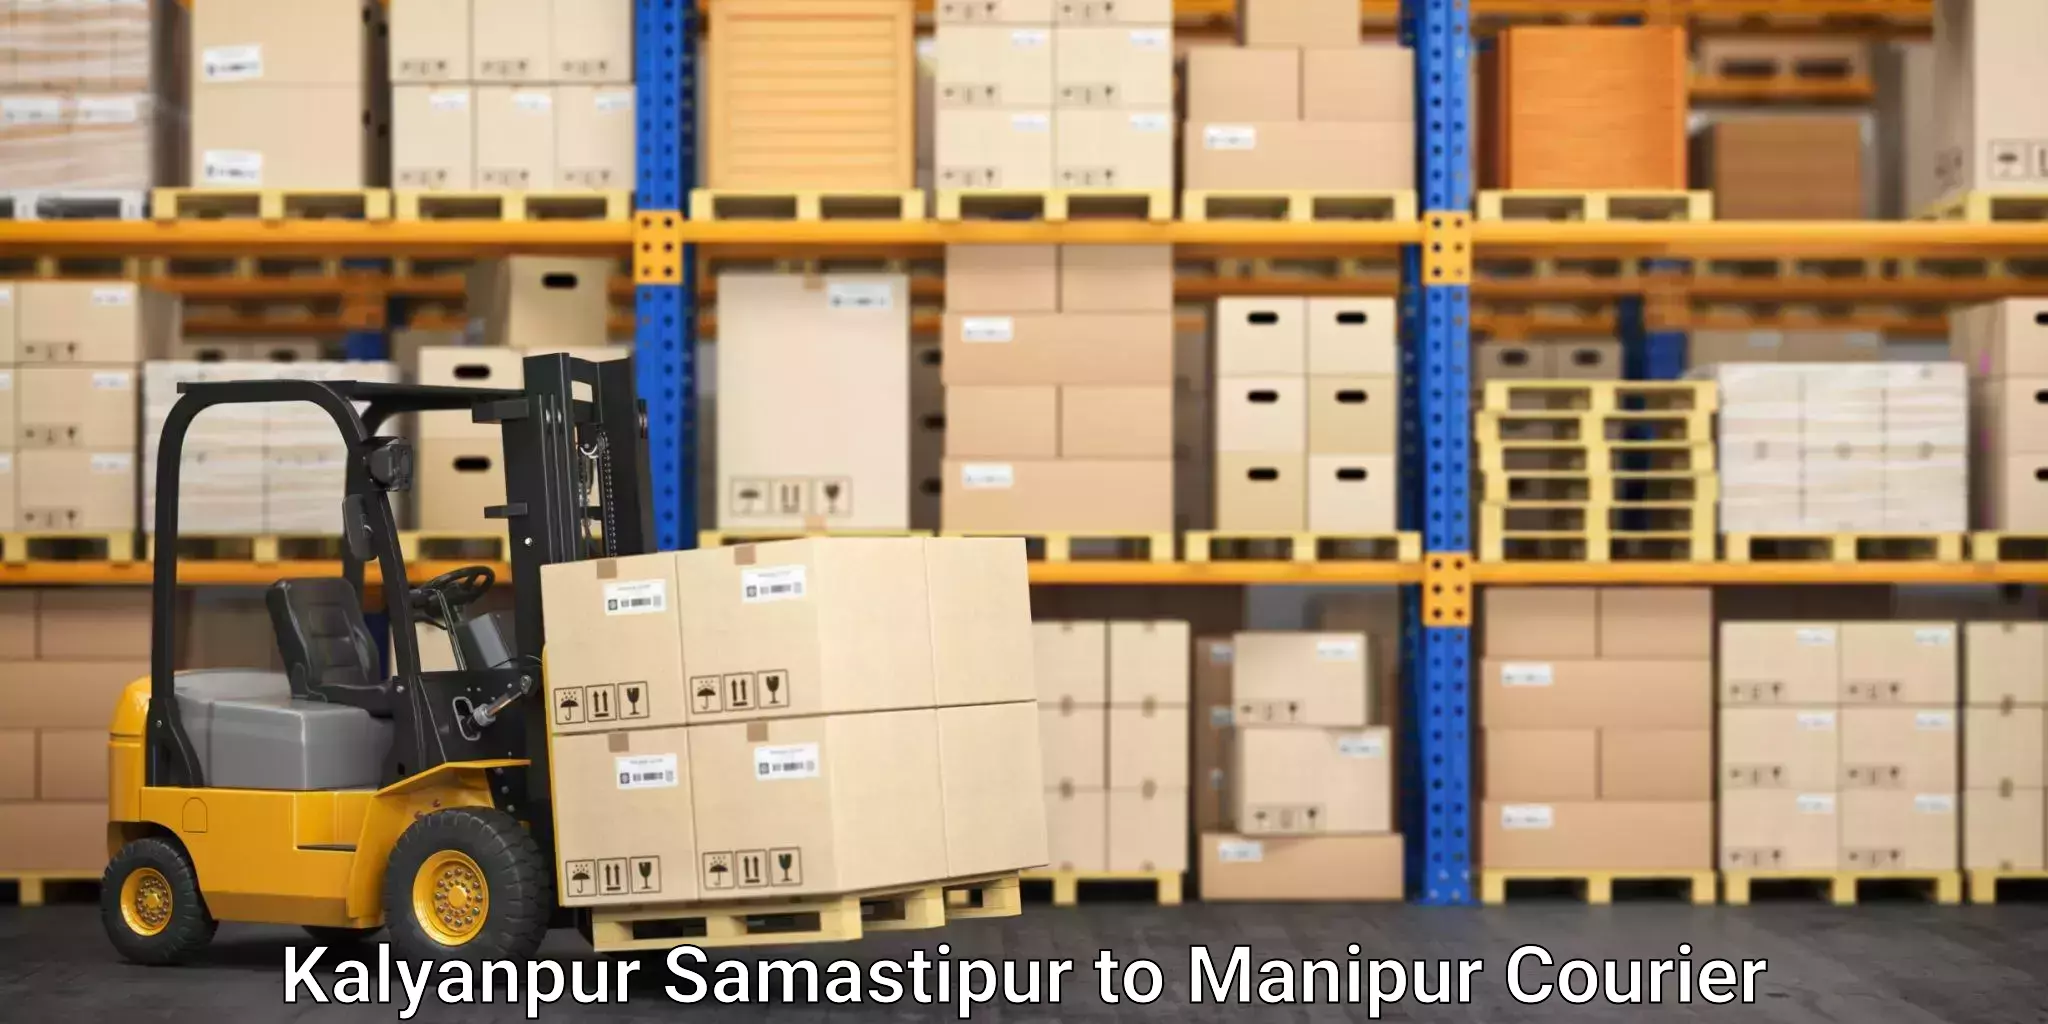 Reliable furniture transport in Kalyanpur Samastipur to Moirang